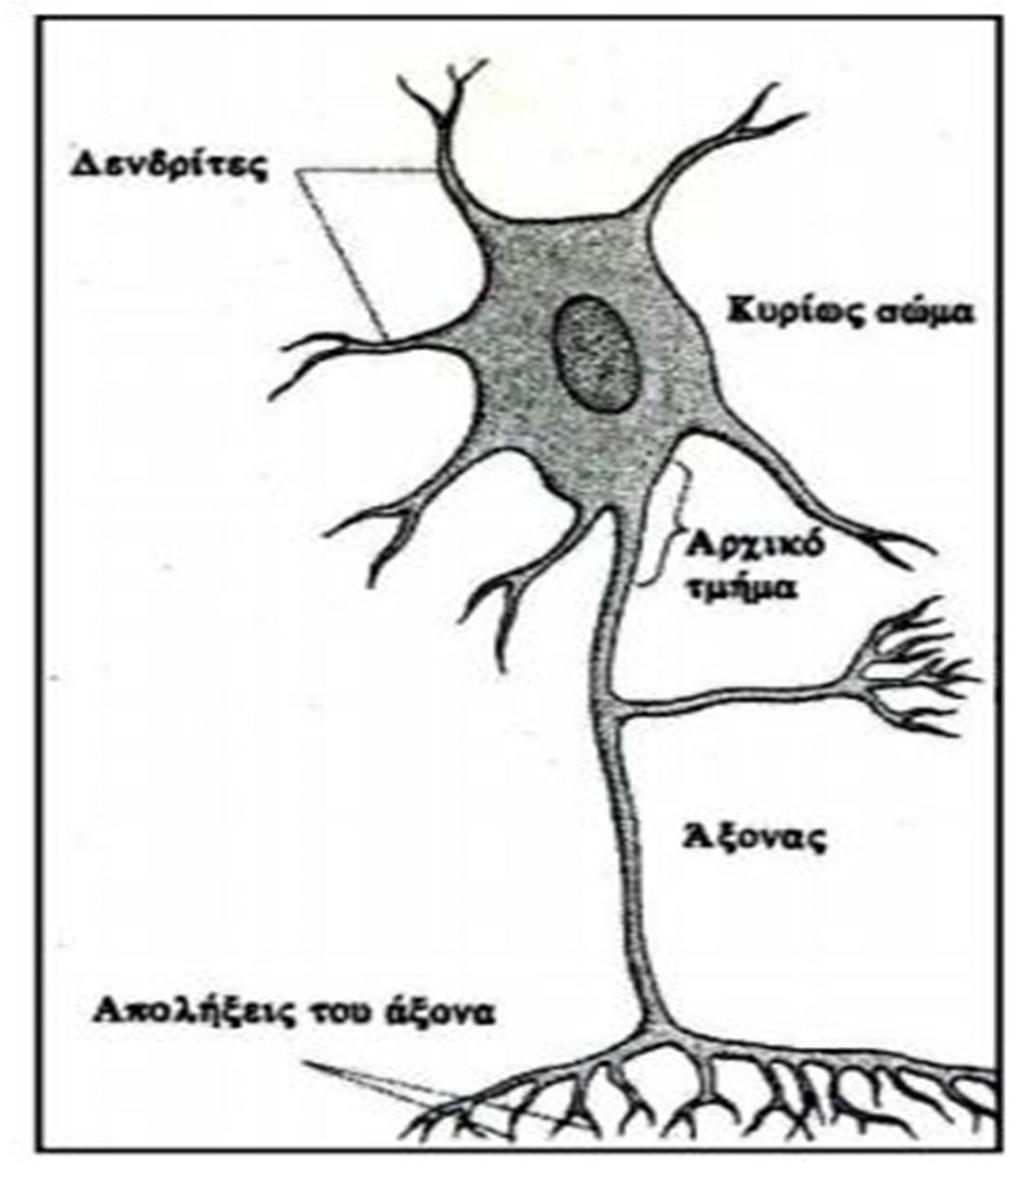 νευρώνα που χρησιμεύει για τη βελτίωση της μόνωσης του και ως εκ τούτου να κάνει τις υπάρχουσες συνδέσεις πιο αποτελεσματικές.